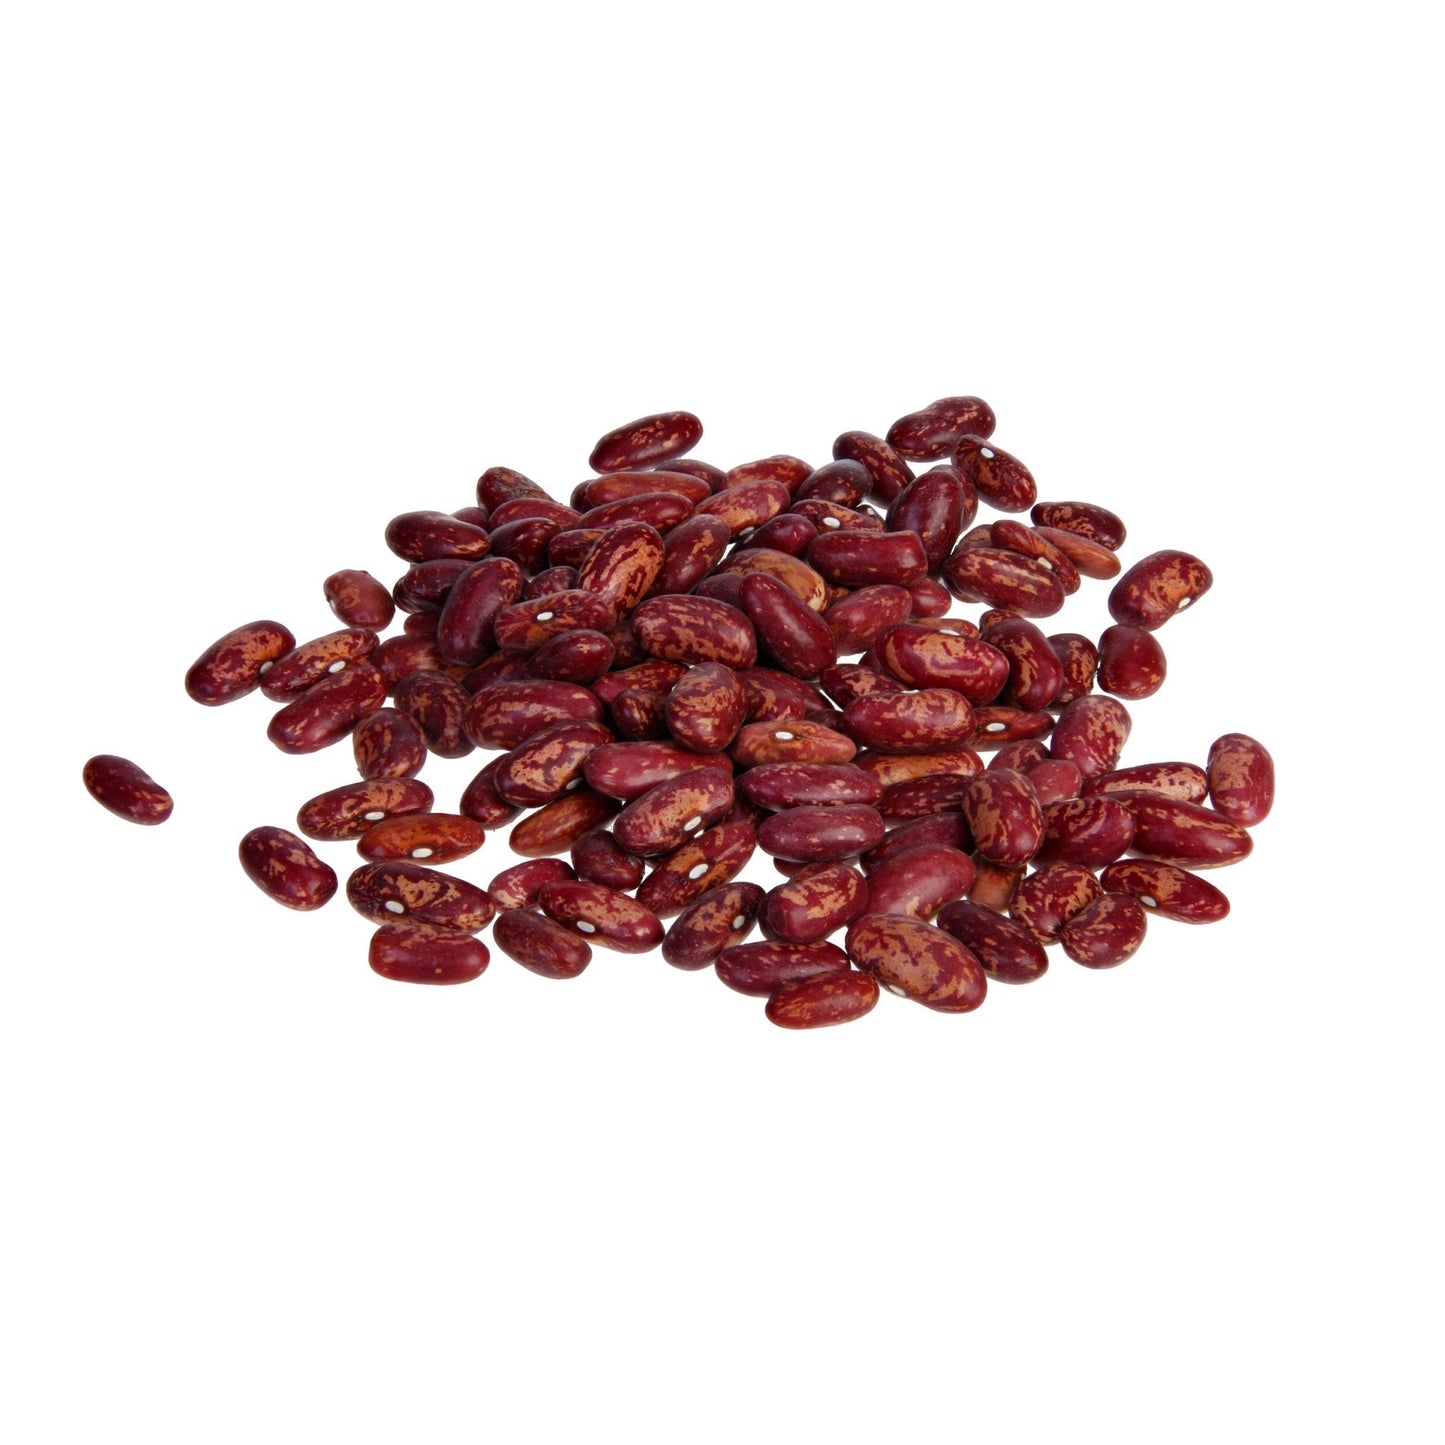 Red Kidney Beans 25 LB